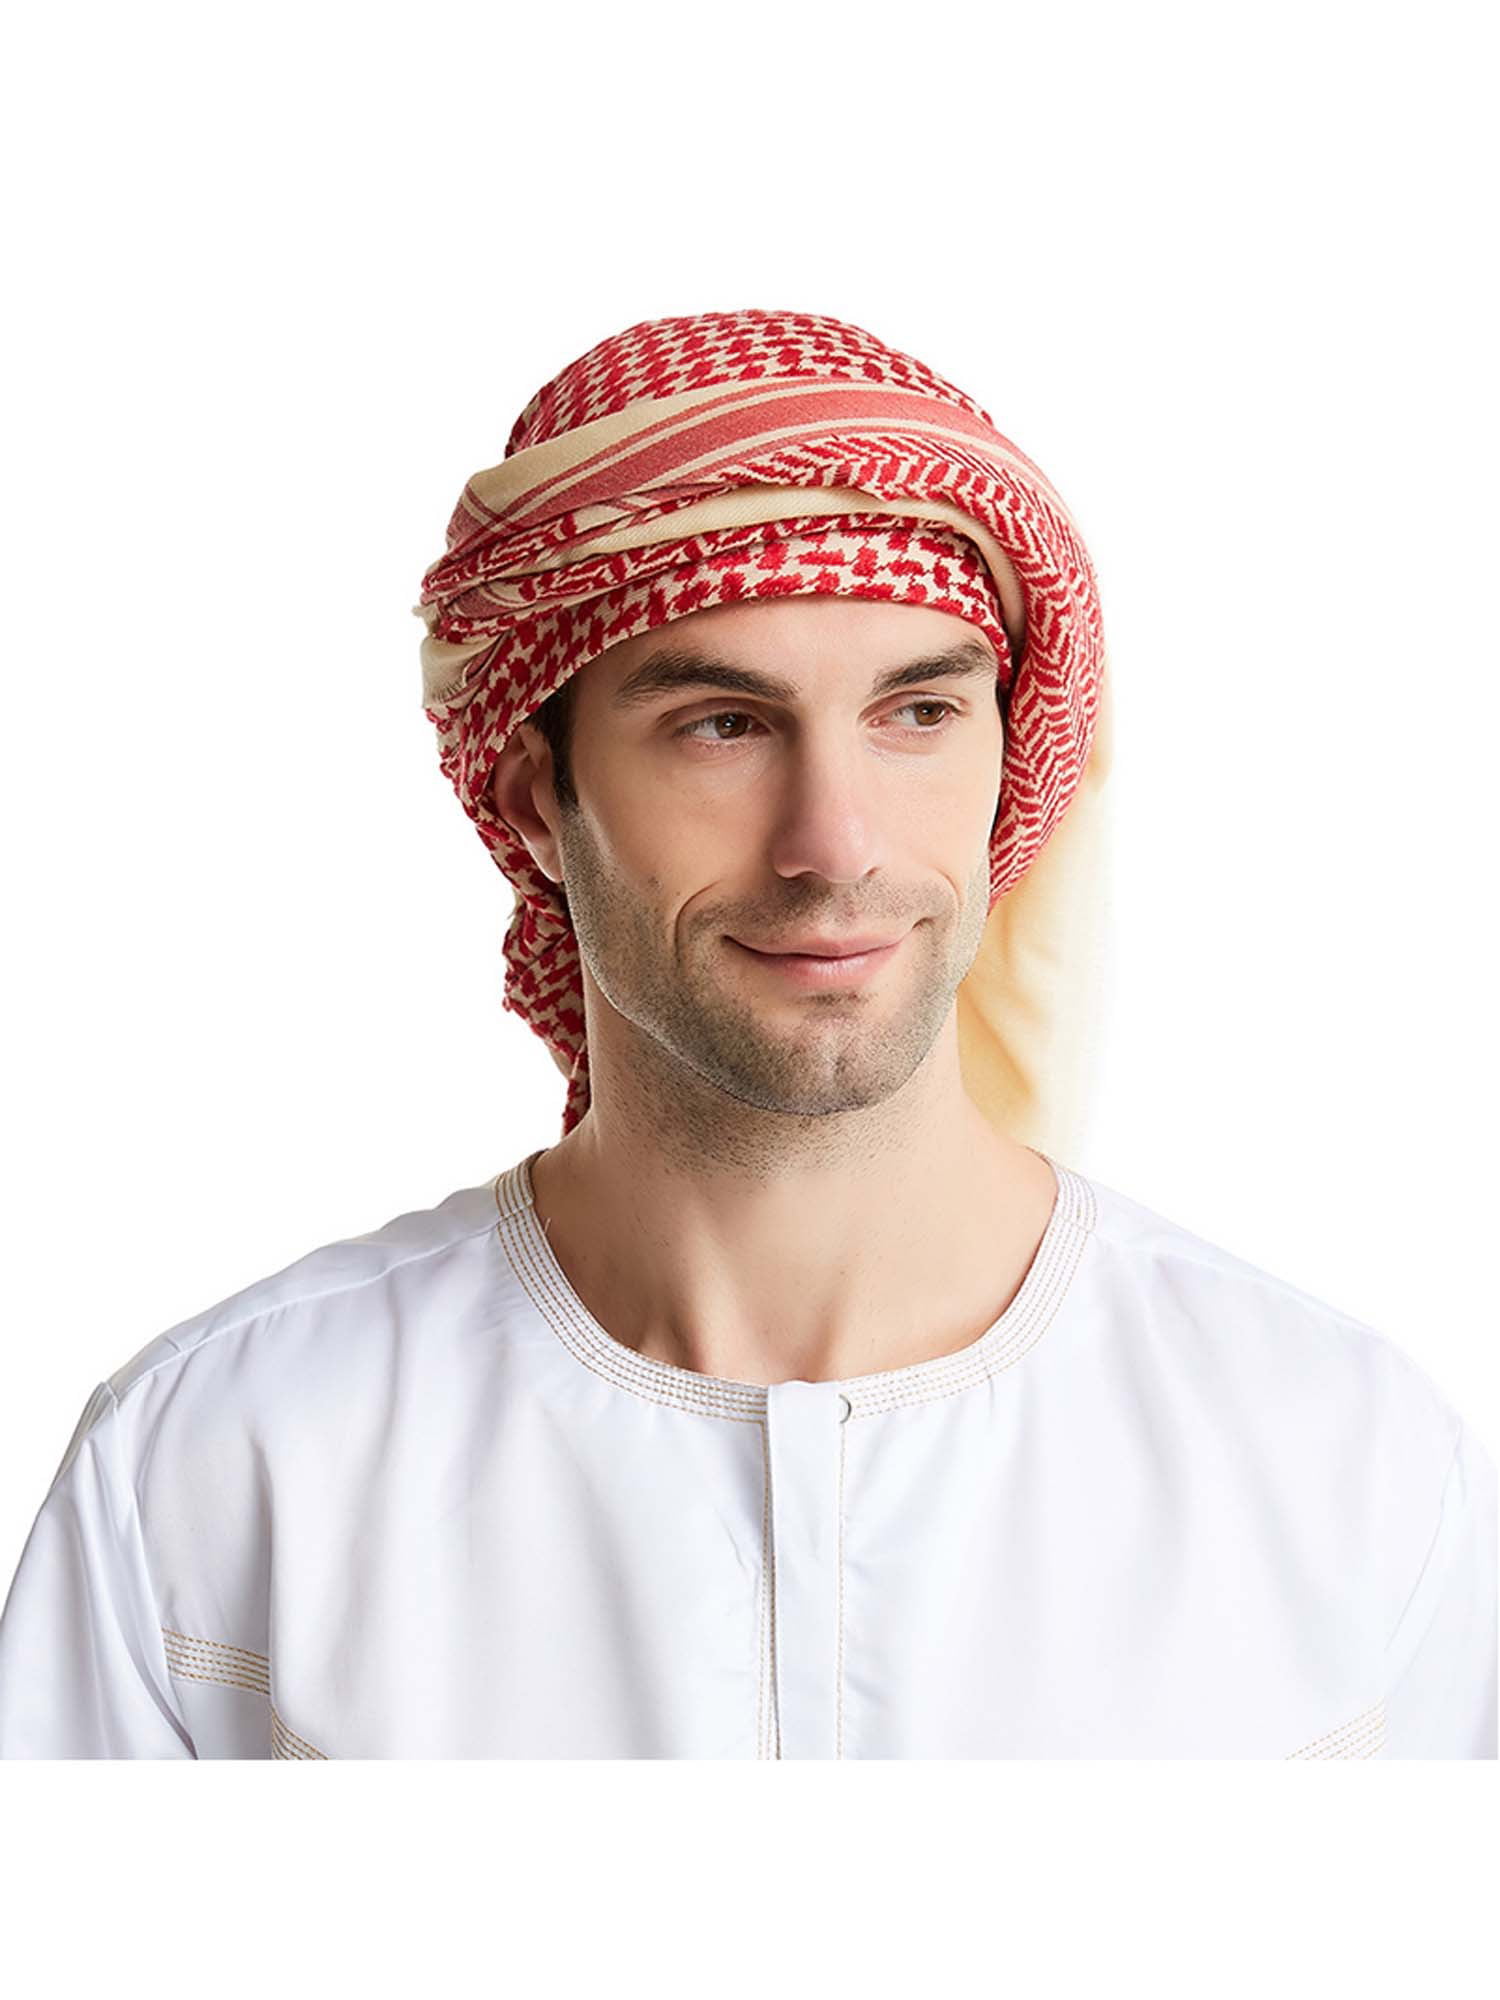 Платок на голову мужчине. Куфия шейха. Арабский головной убор куфия. Арабский головной убор мужской. Головной убор арабов мужчин.